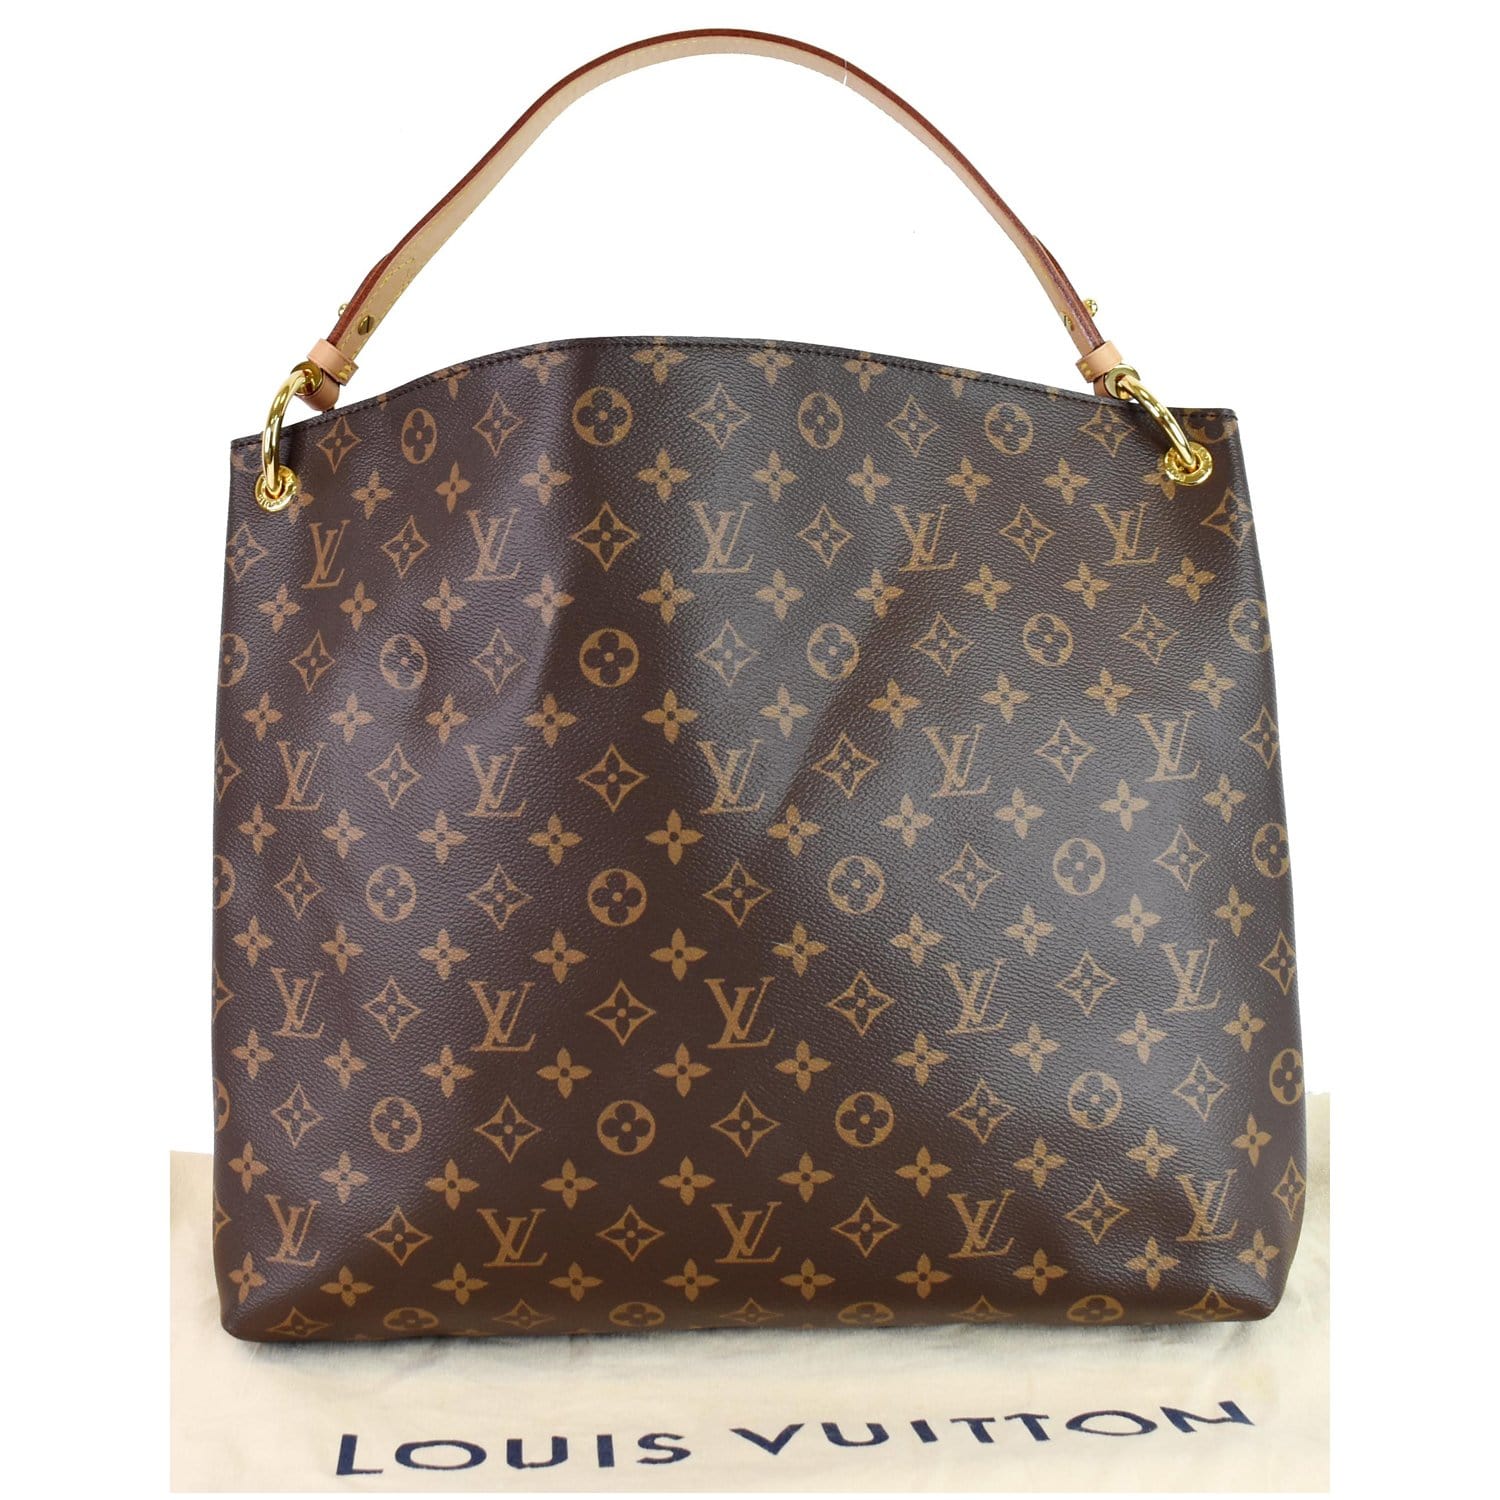 Louis Vuitton Graceful Leather Handbag